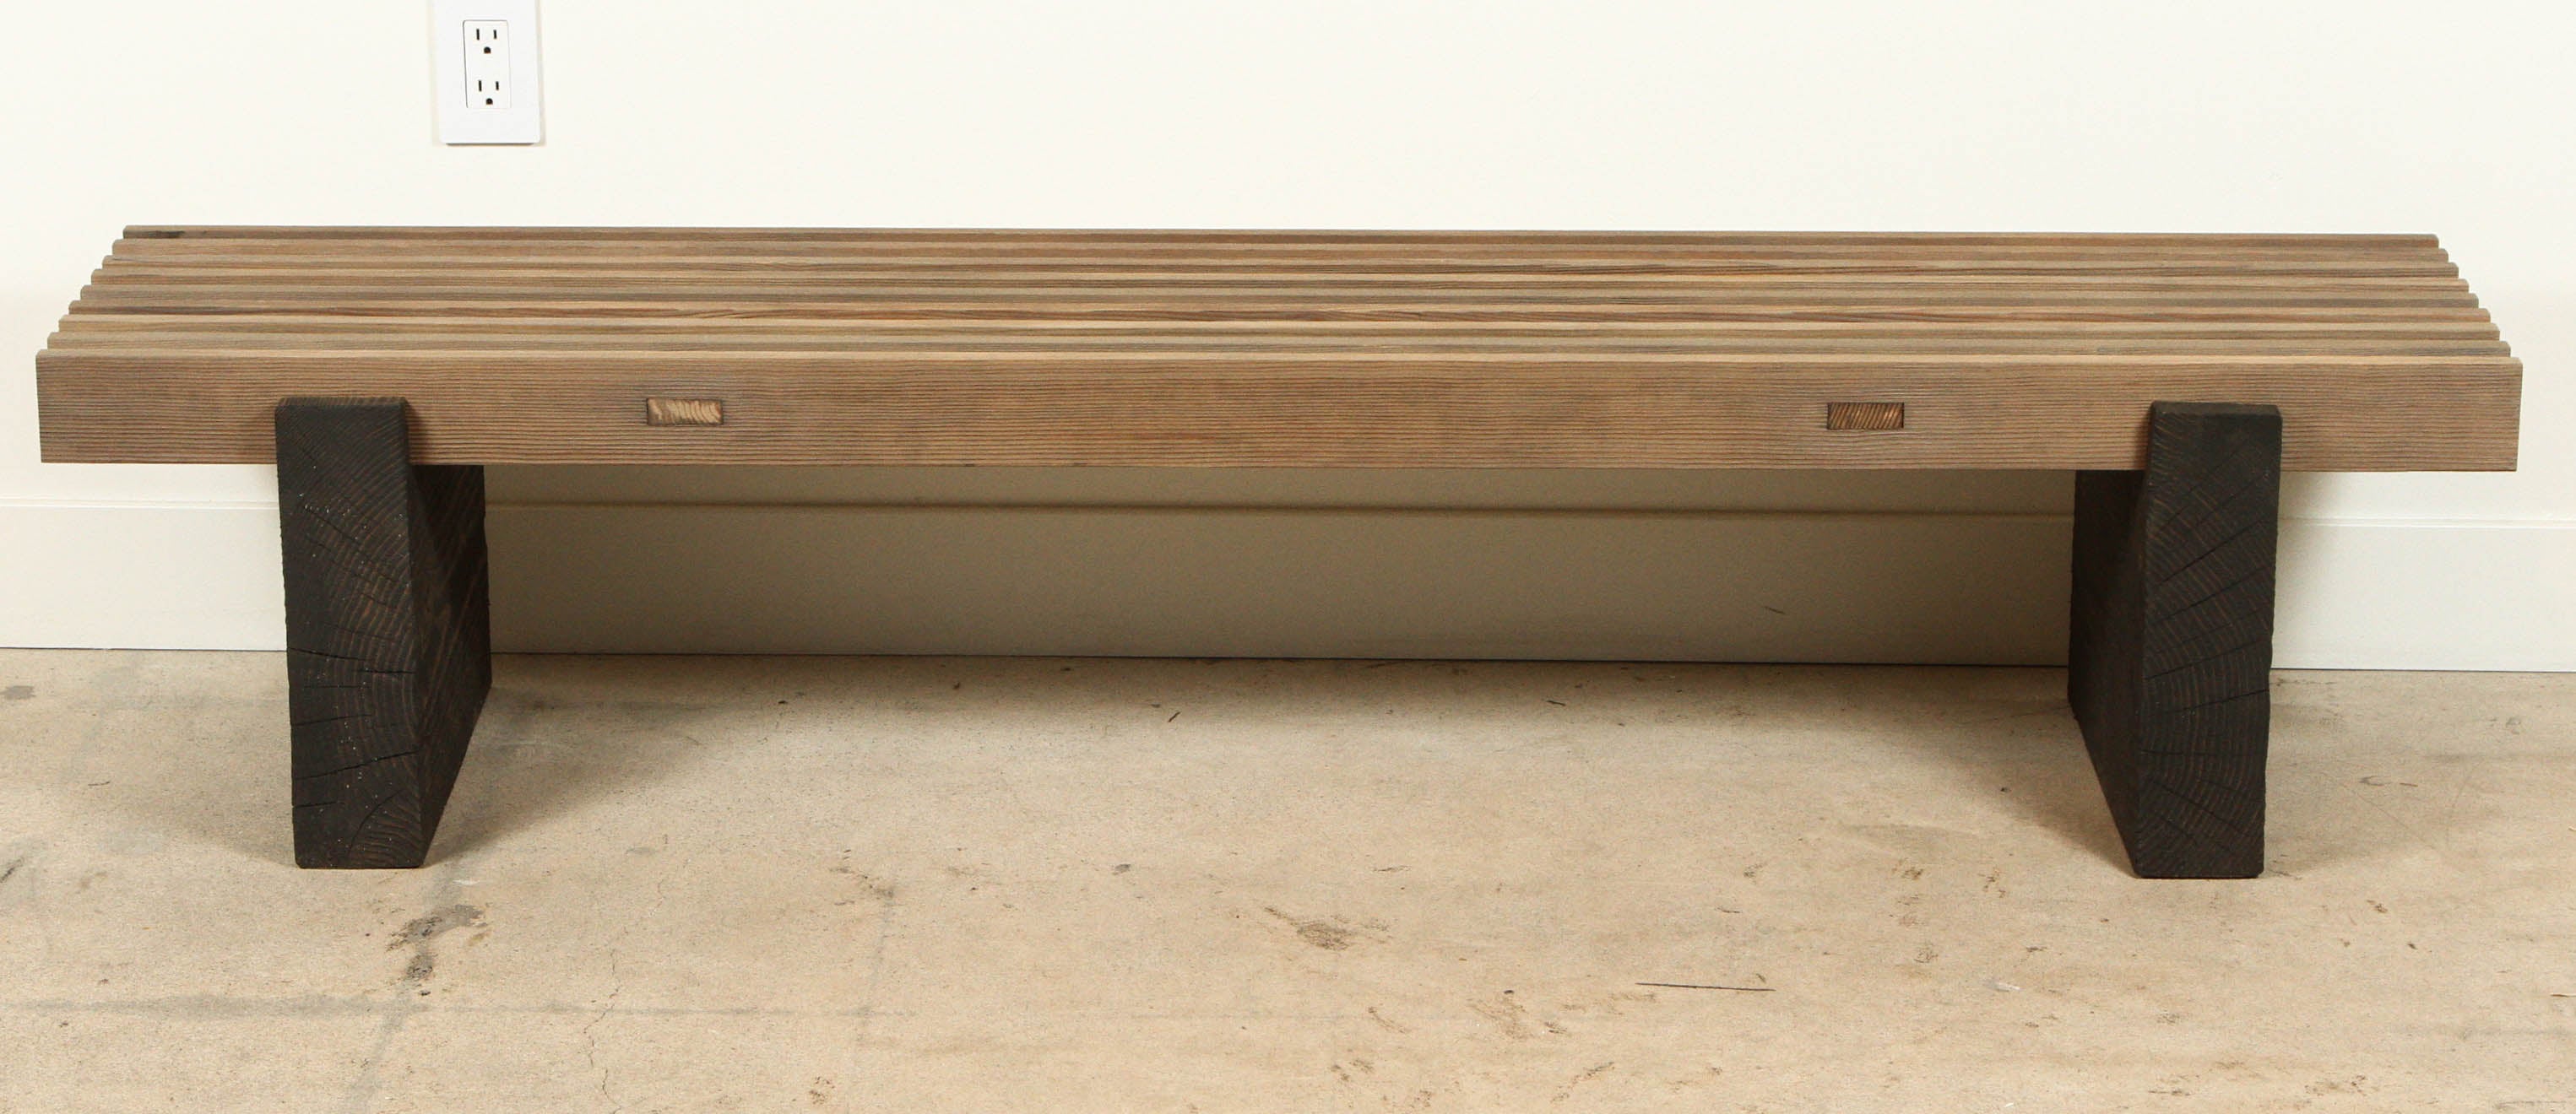 Minimalist Slat Bench by Ten10 for Lawson-Fenning